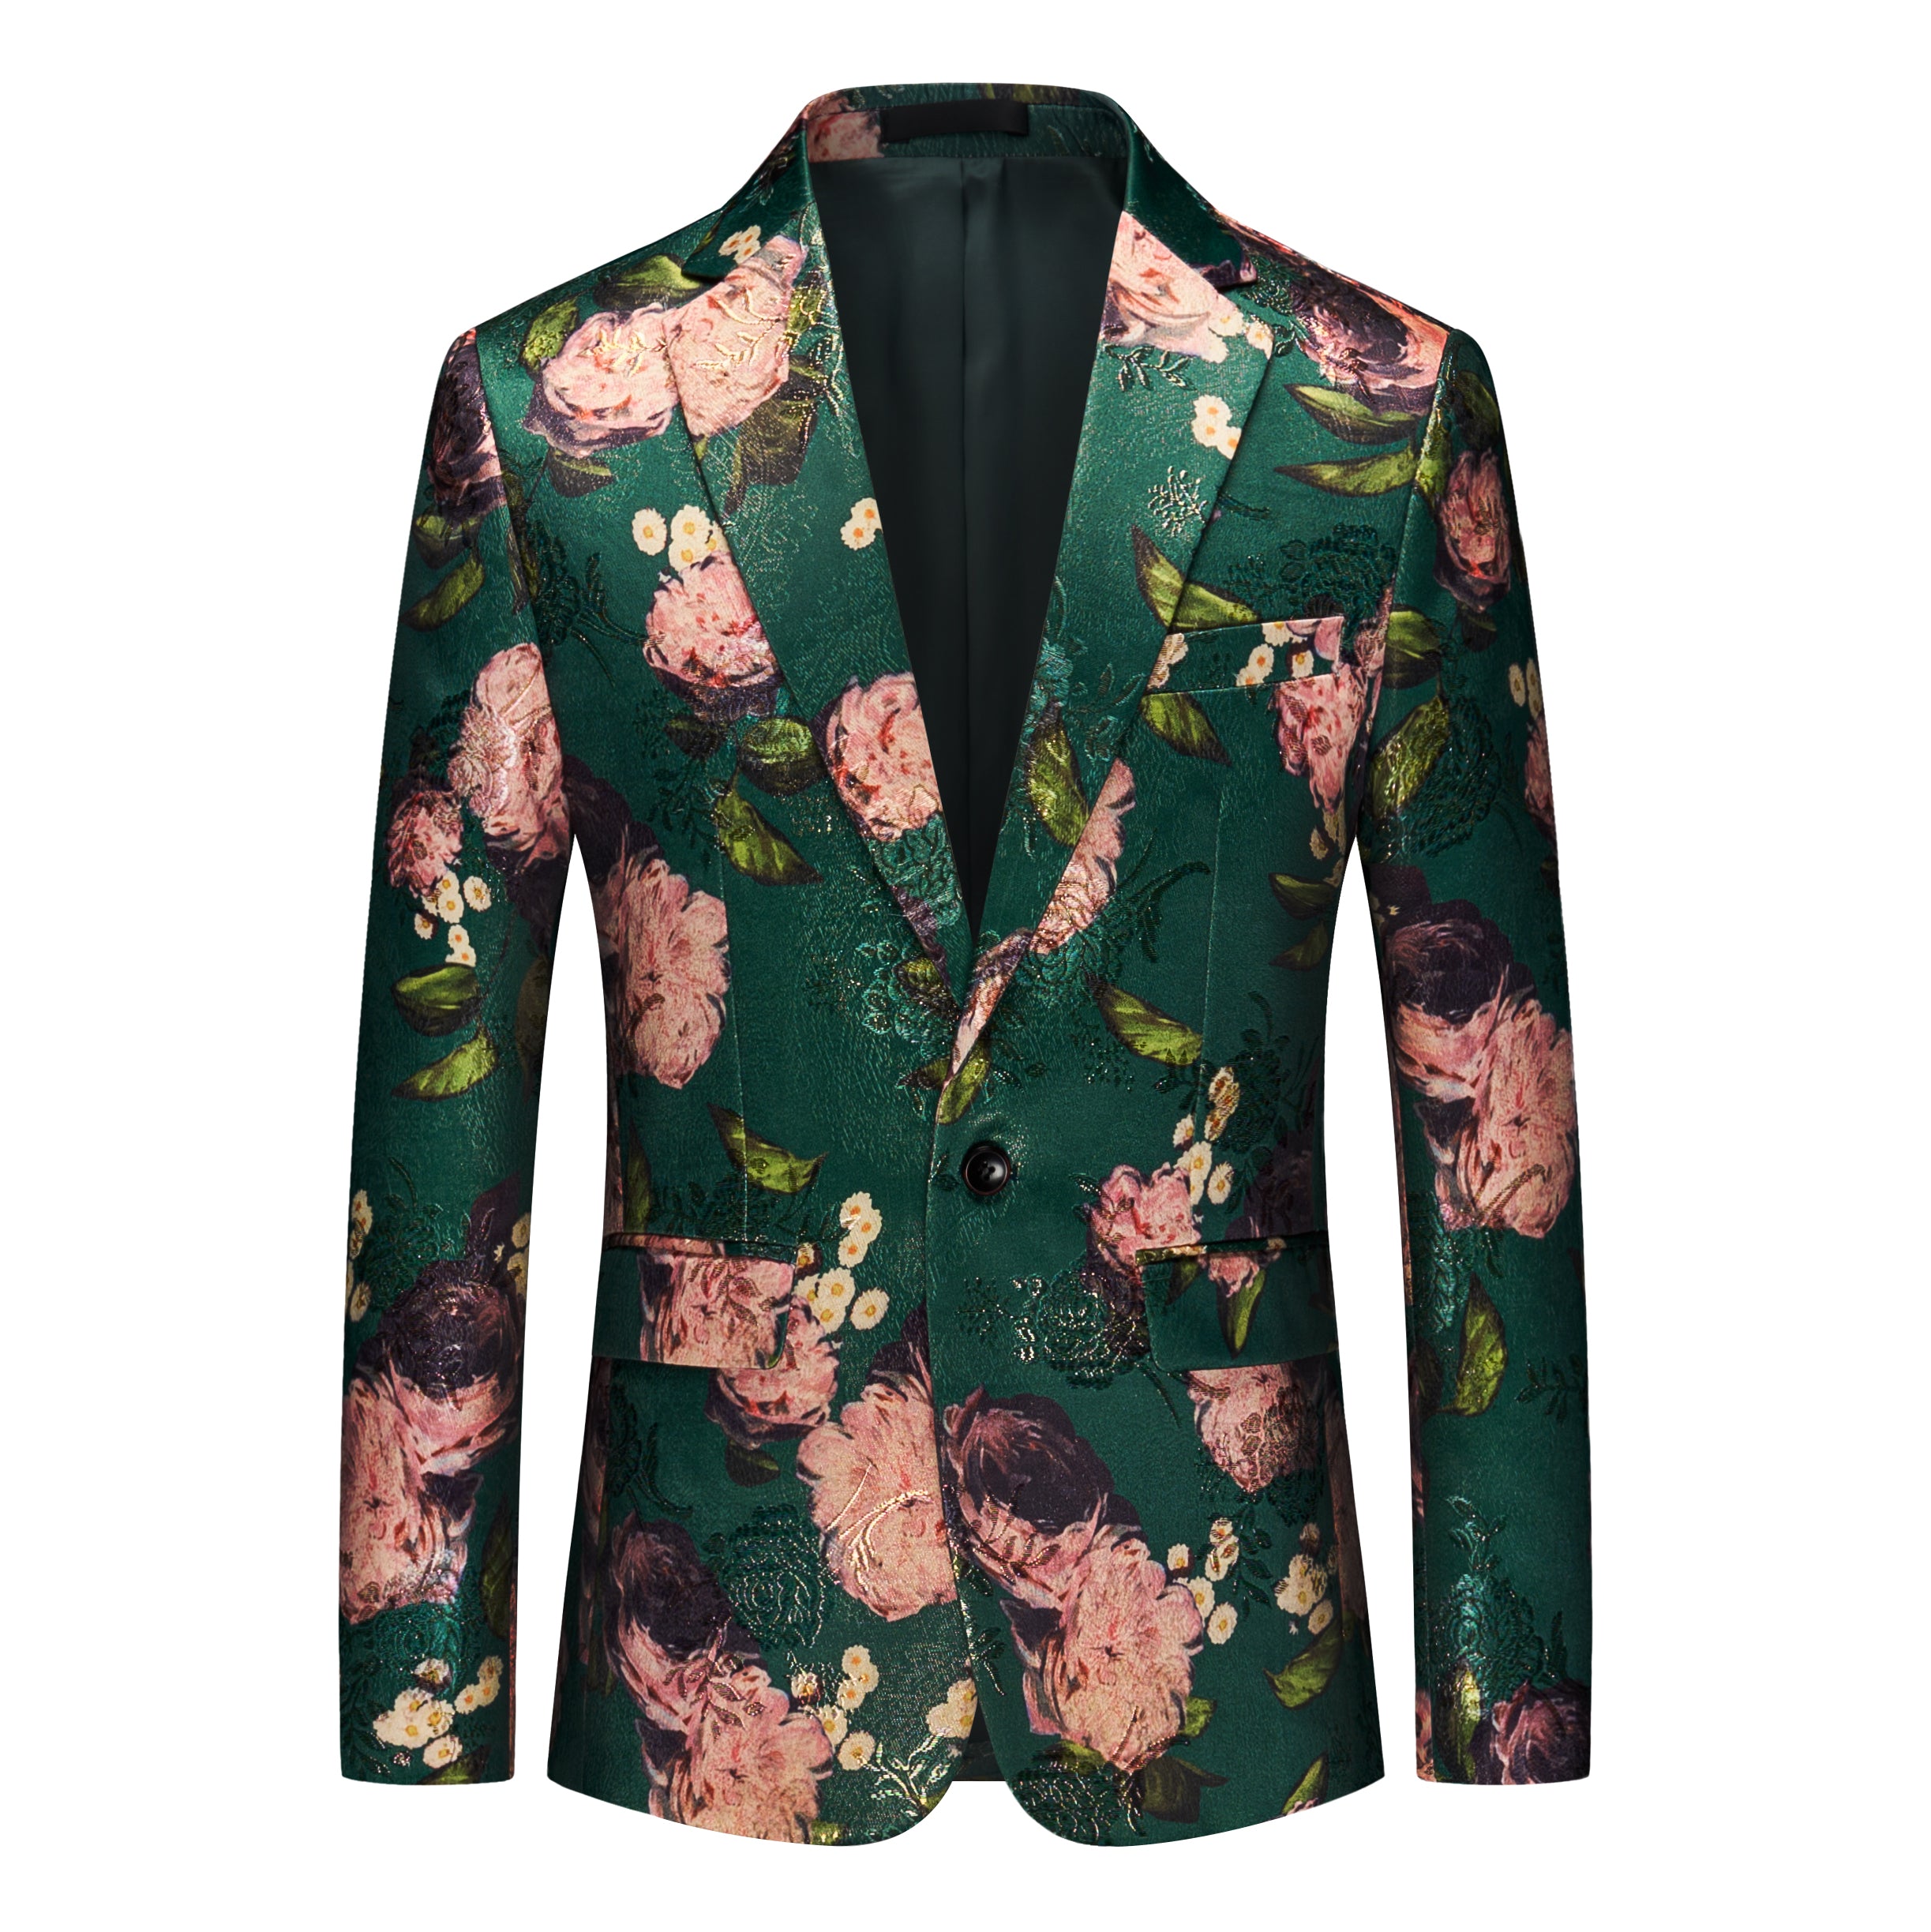 Men's Blazer Jacquard Floral Slim Fit Sport Coat in Green